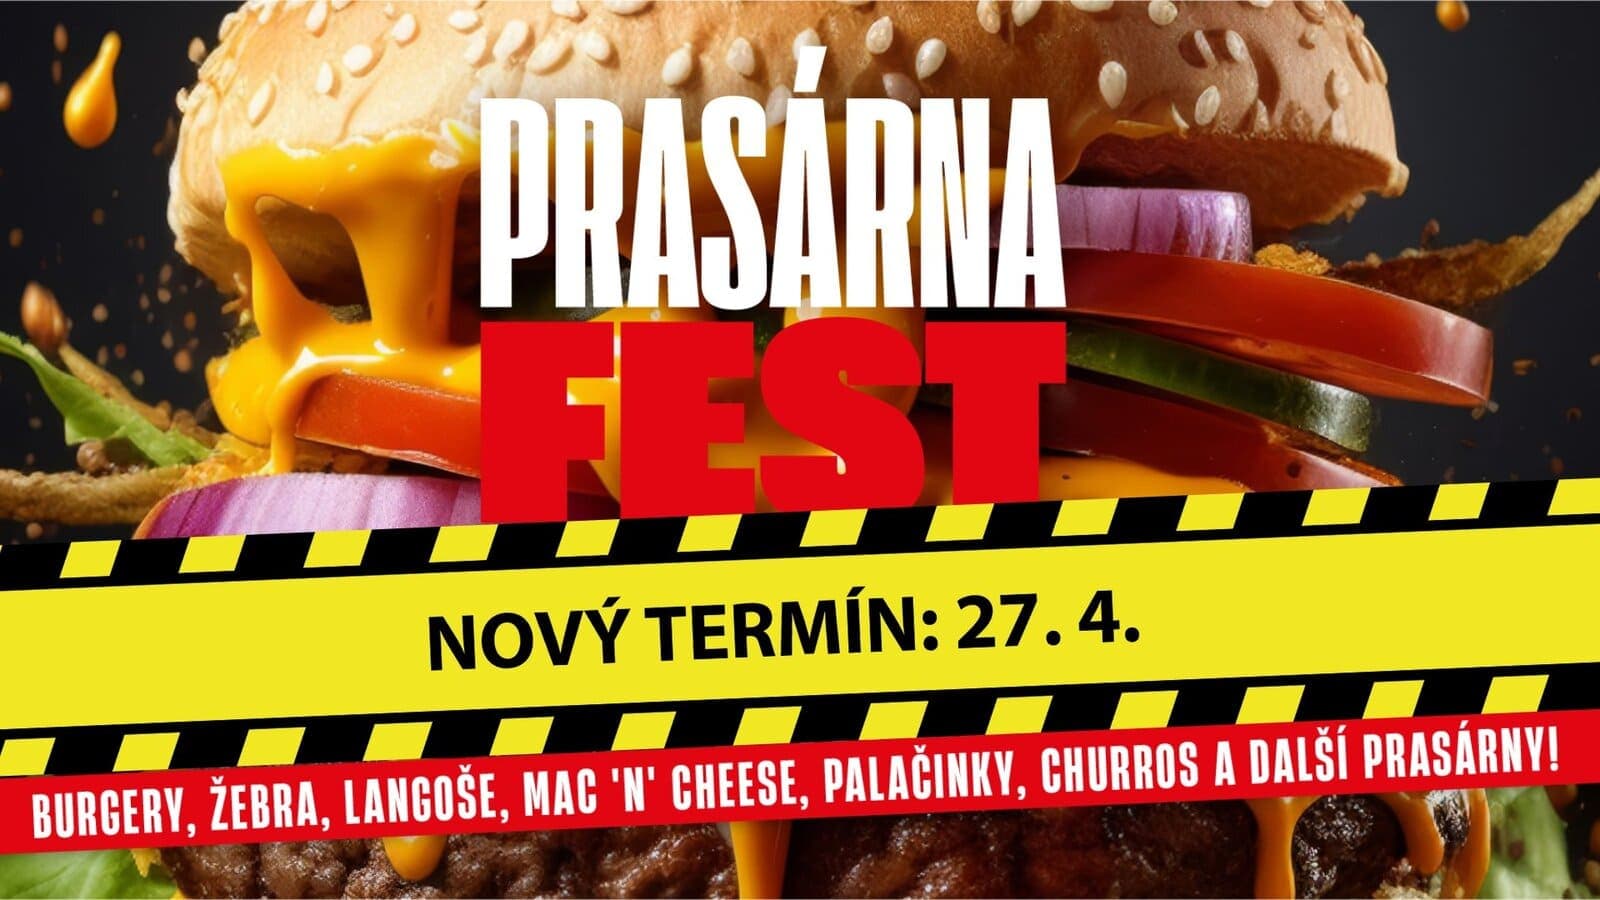 27 апреля в Праге пройдет Prasárna Fest